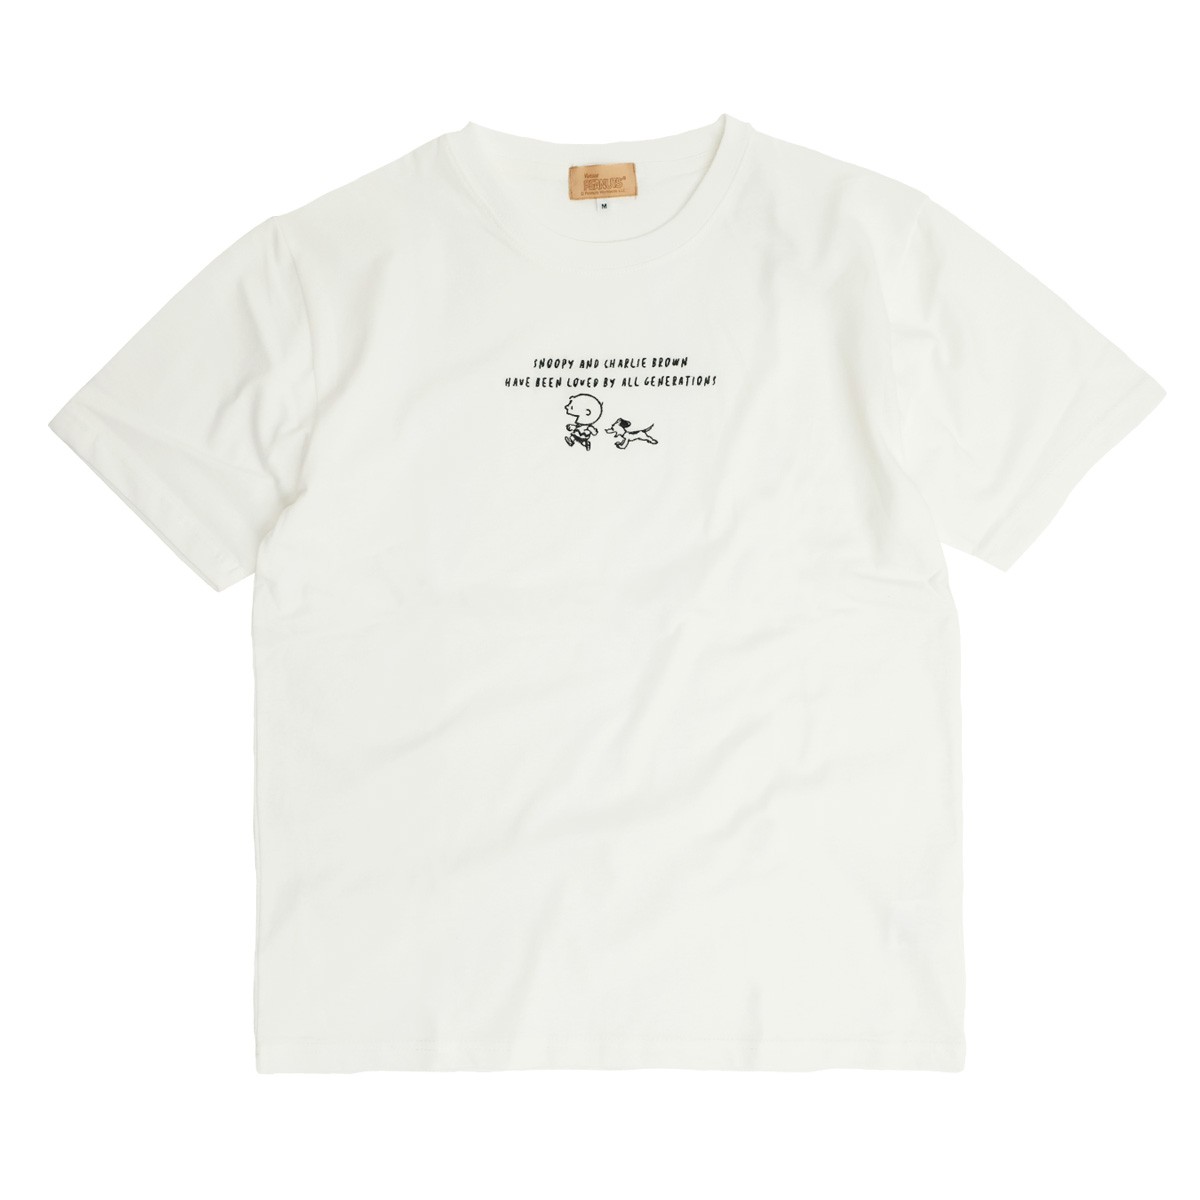 スヌーピー Tシャツ Snoopy 70s イラスト 刺繍 半袖tシャツ ピーナッツ チャーリーブラウン グッズ メンズ レディース ユニセックス トップス Tss 460 Tss 460 Renovatio 通販 Yahoo ショッピング